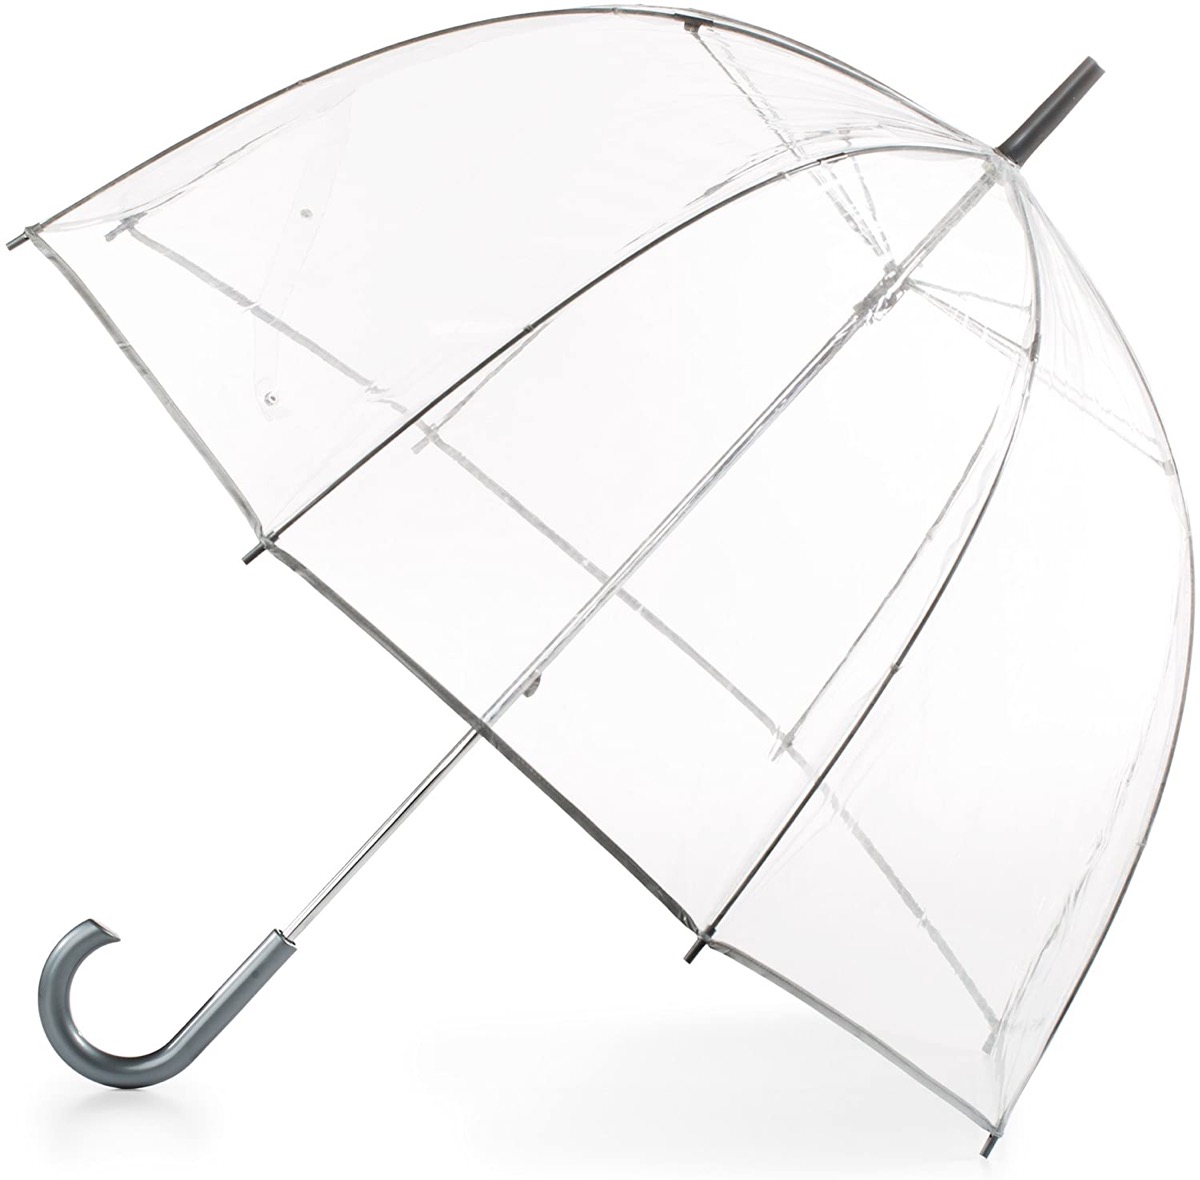 clear umbrella